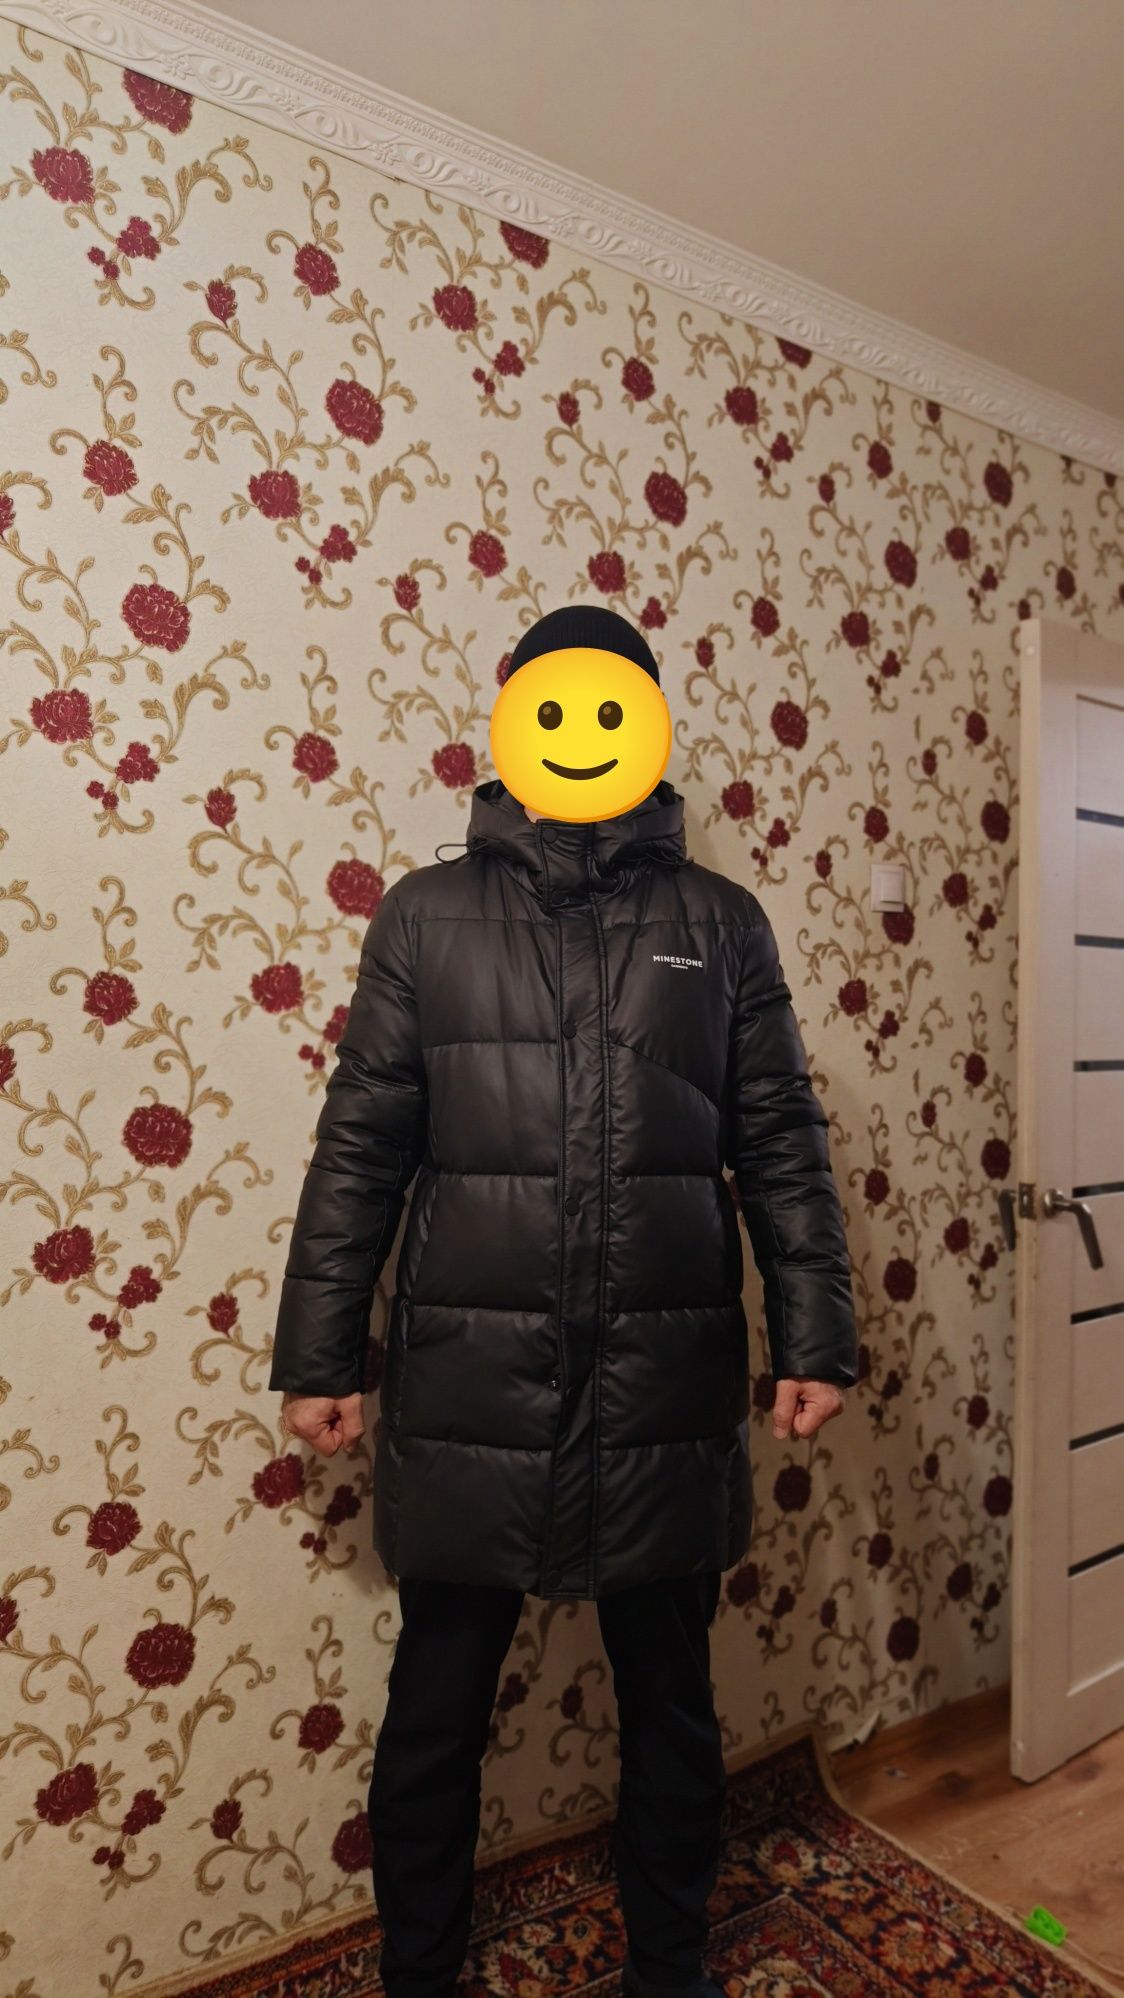 Зимная куртка 50-52 размер